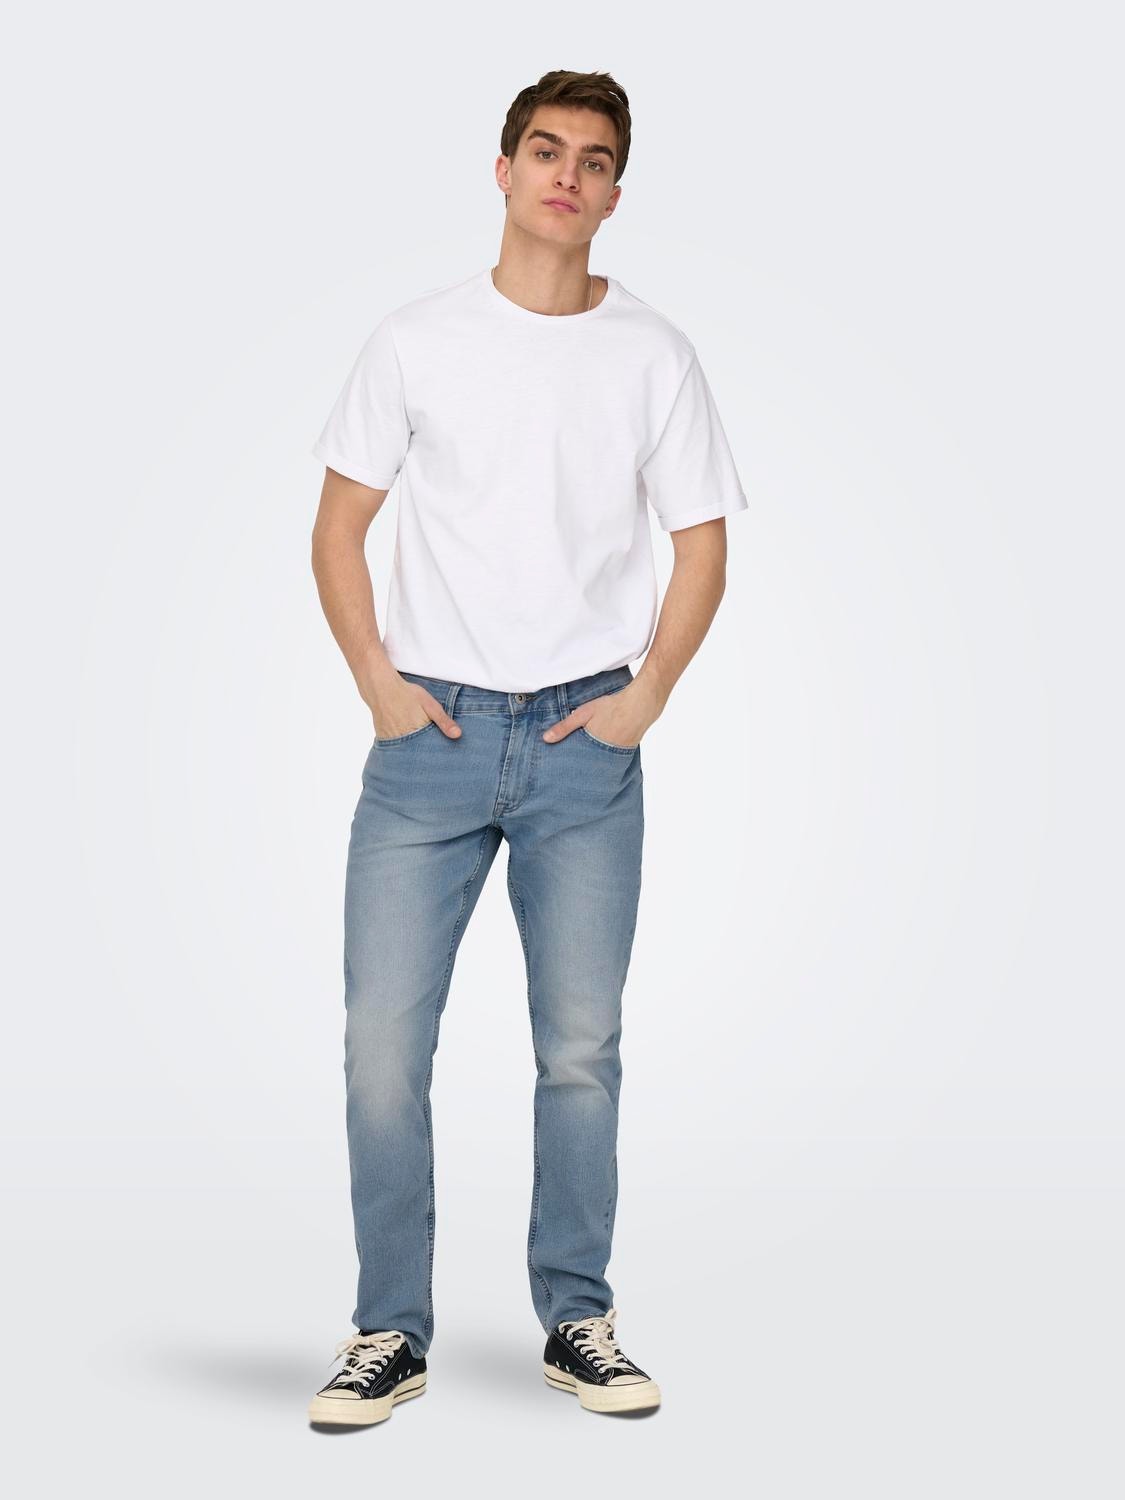 ONLY & SONS Jeans Slim Fit Taille classique -Light Blue Denim - 22024326